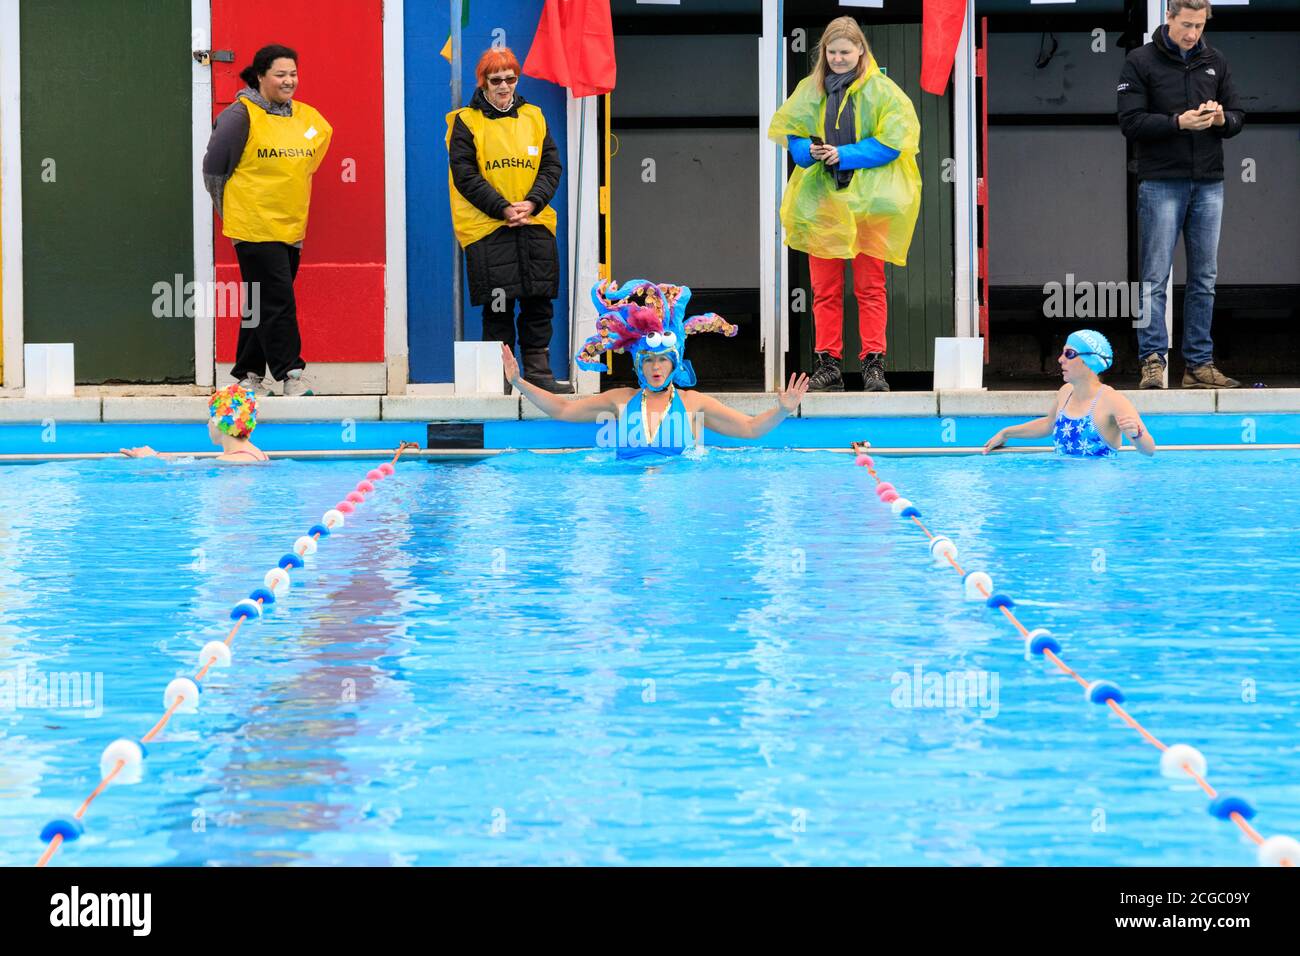 Concurrents aux championnats de natation en eau froide du Royaume-Uni, Tooting Bec Lido, Londres, Angleterre, Royaume-Uni Banque D'Images